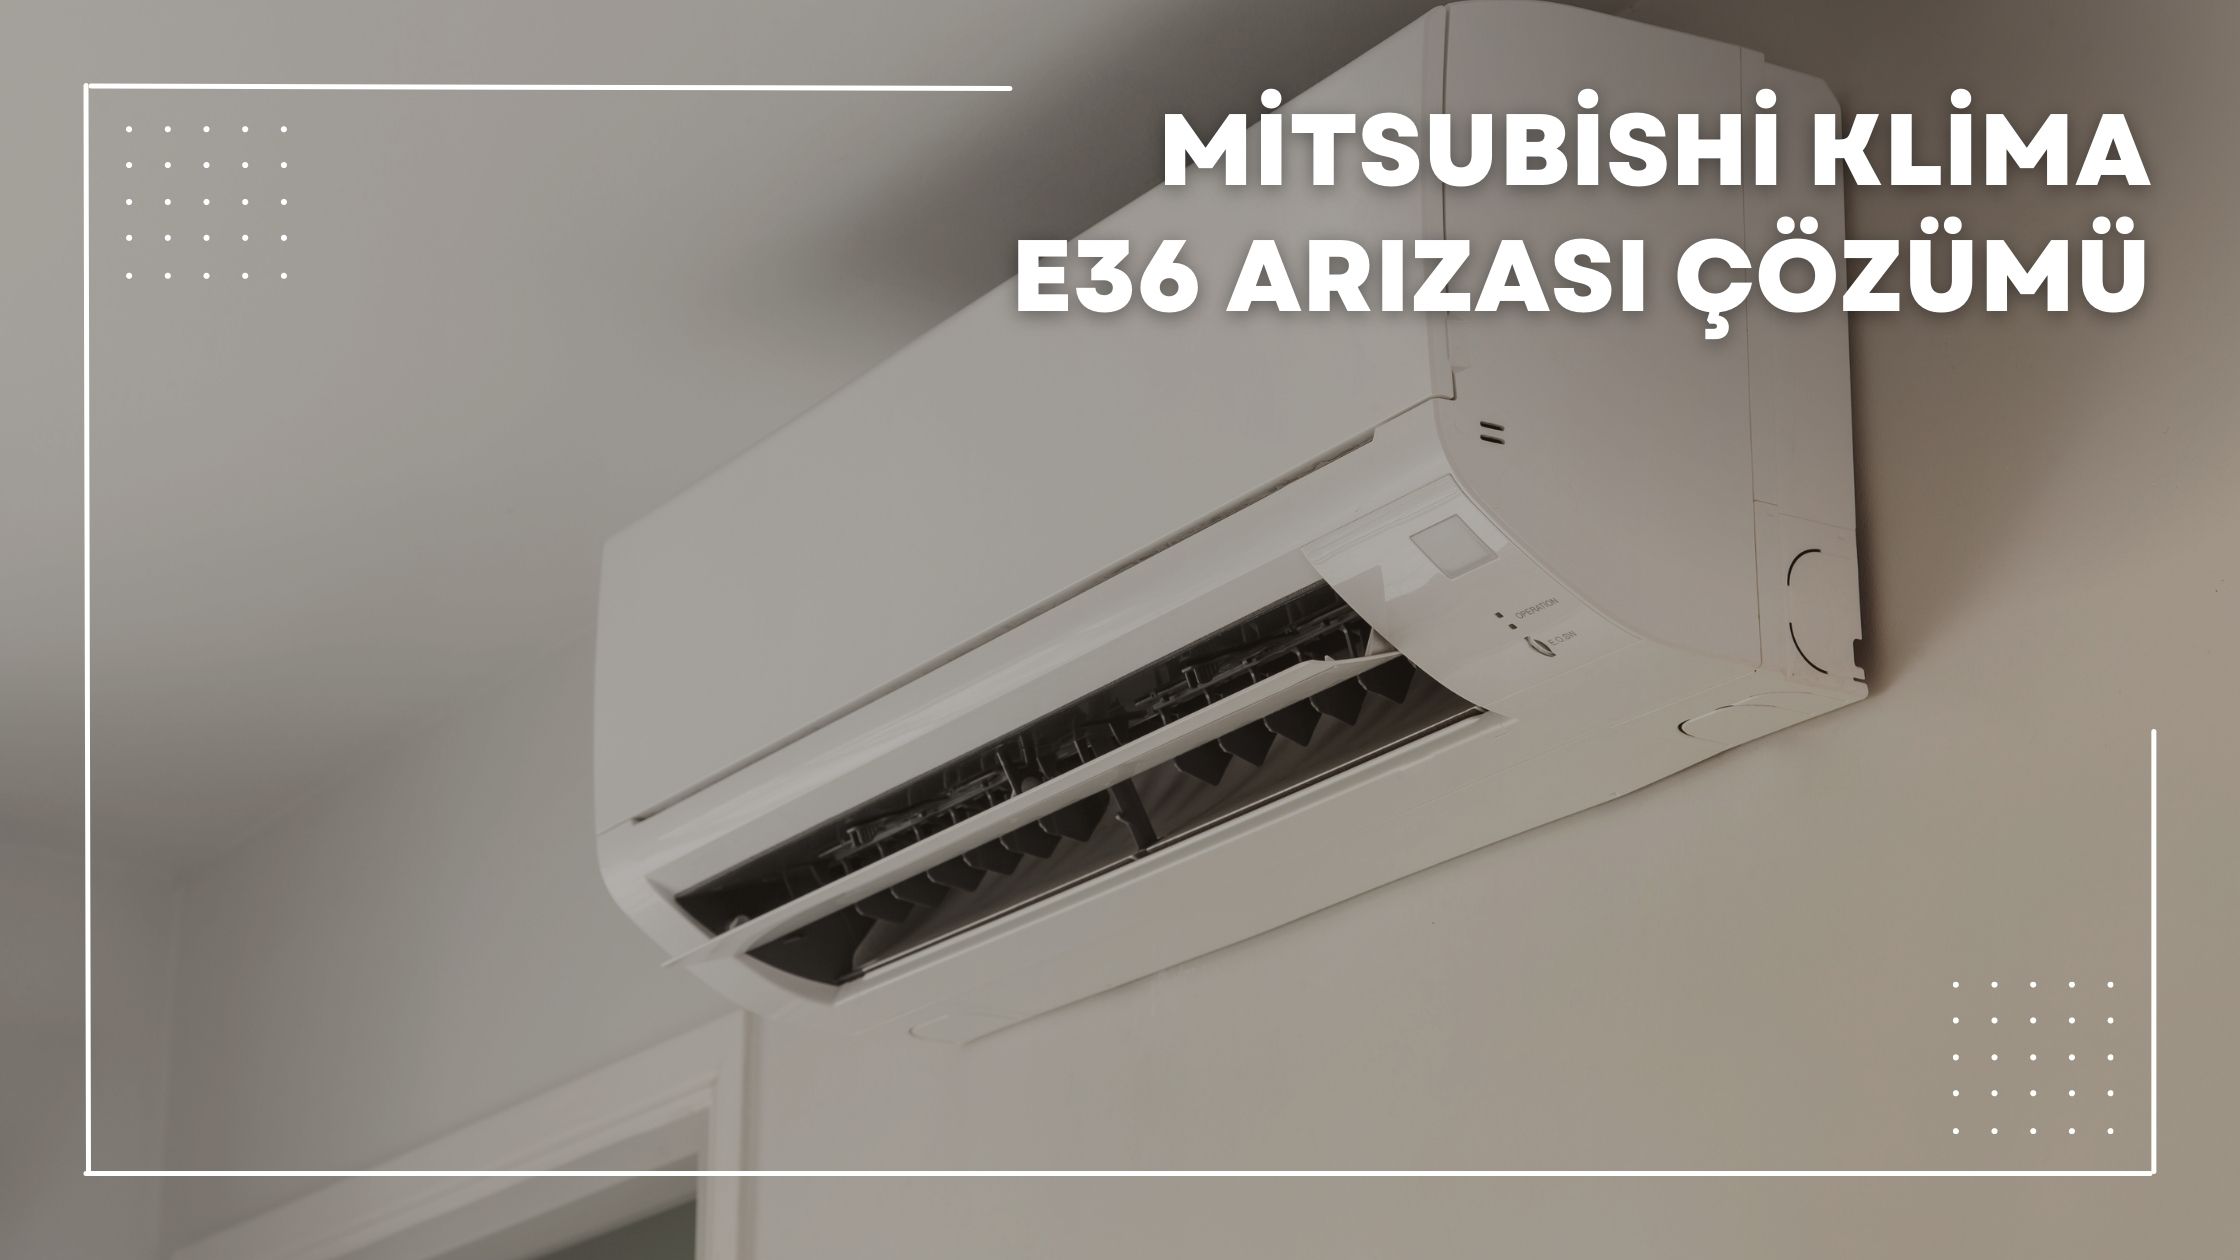 Mitsubishi Klima E36 Arızası Çözümü